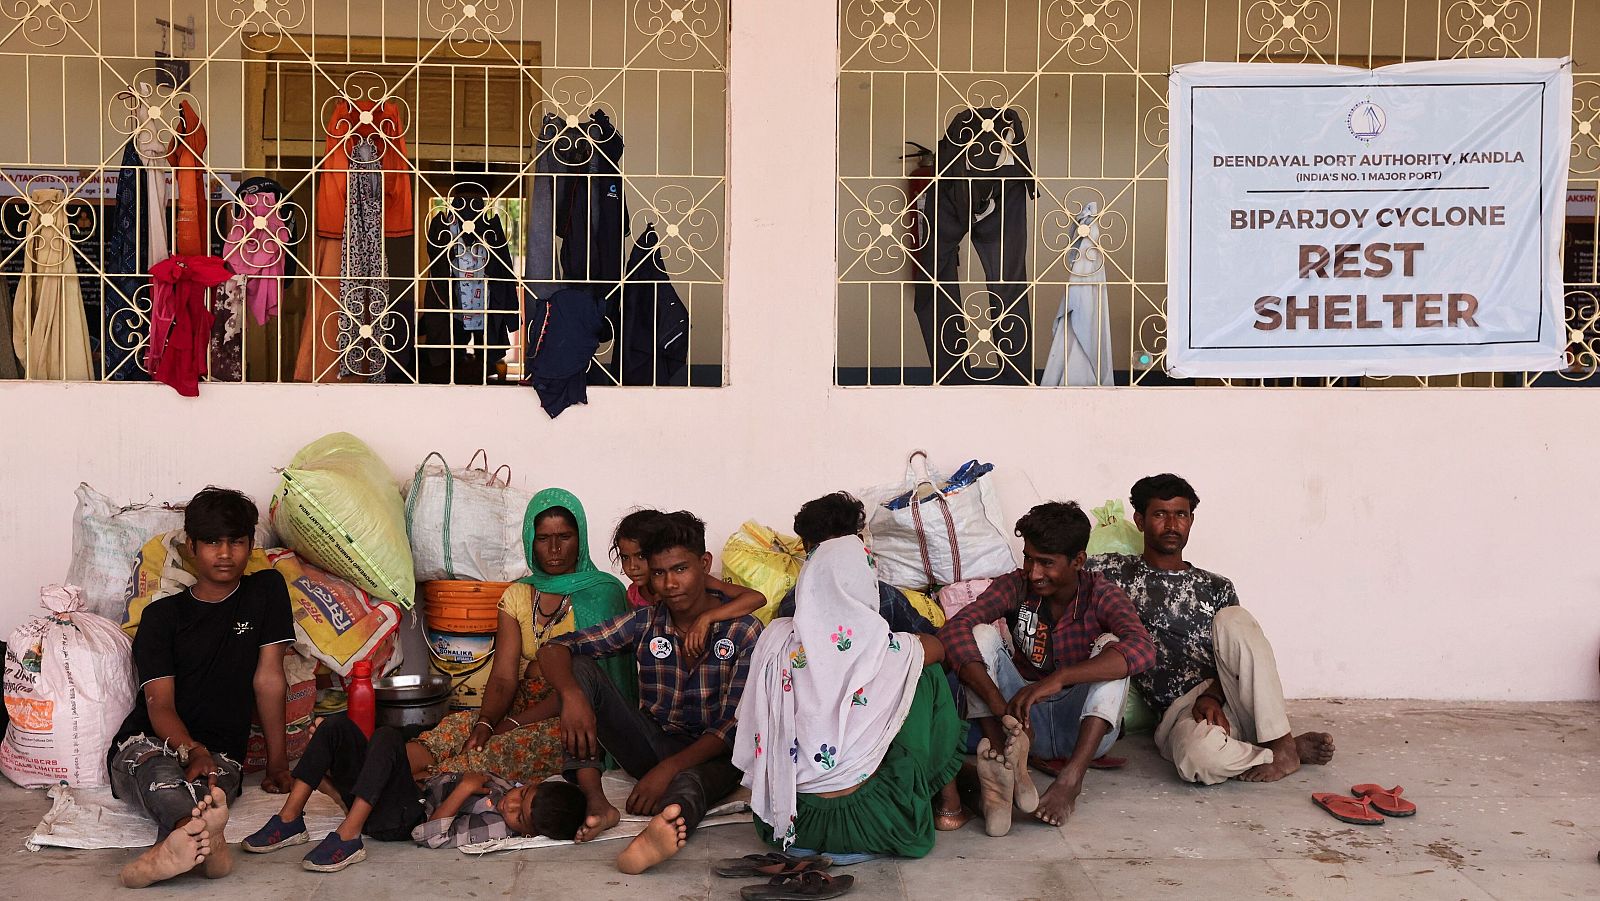 Personas evacuadas del puerto de Kandla sentadas frente a una escuela convertida en refugio en Gandhidham, en el estado occidental de Gujarat, ante la llegada del ciclón Biparjoy